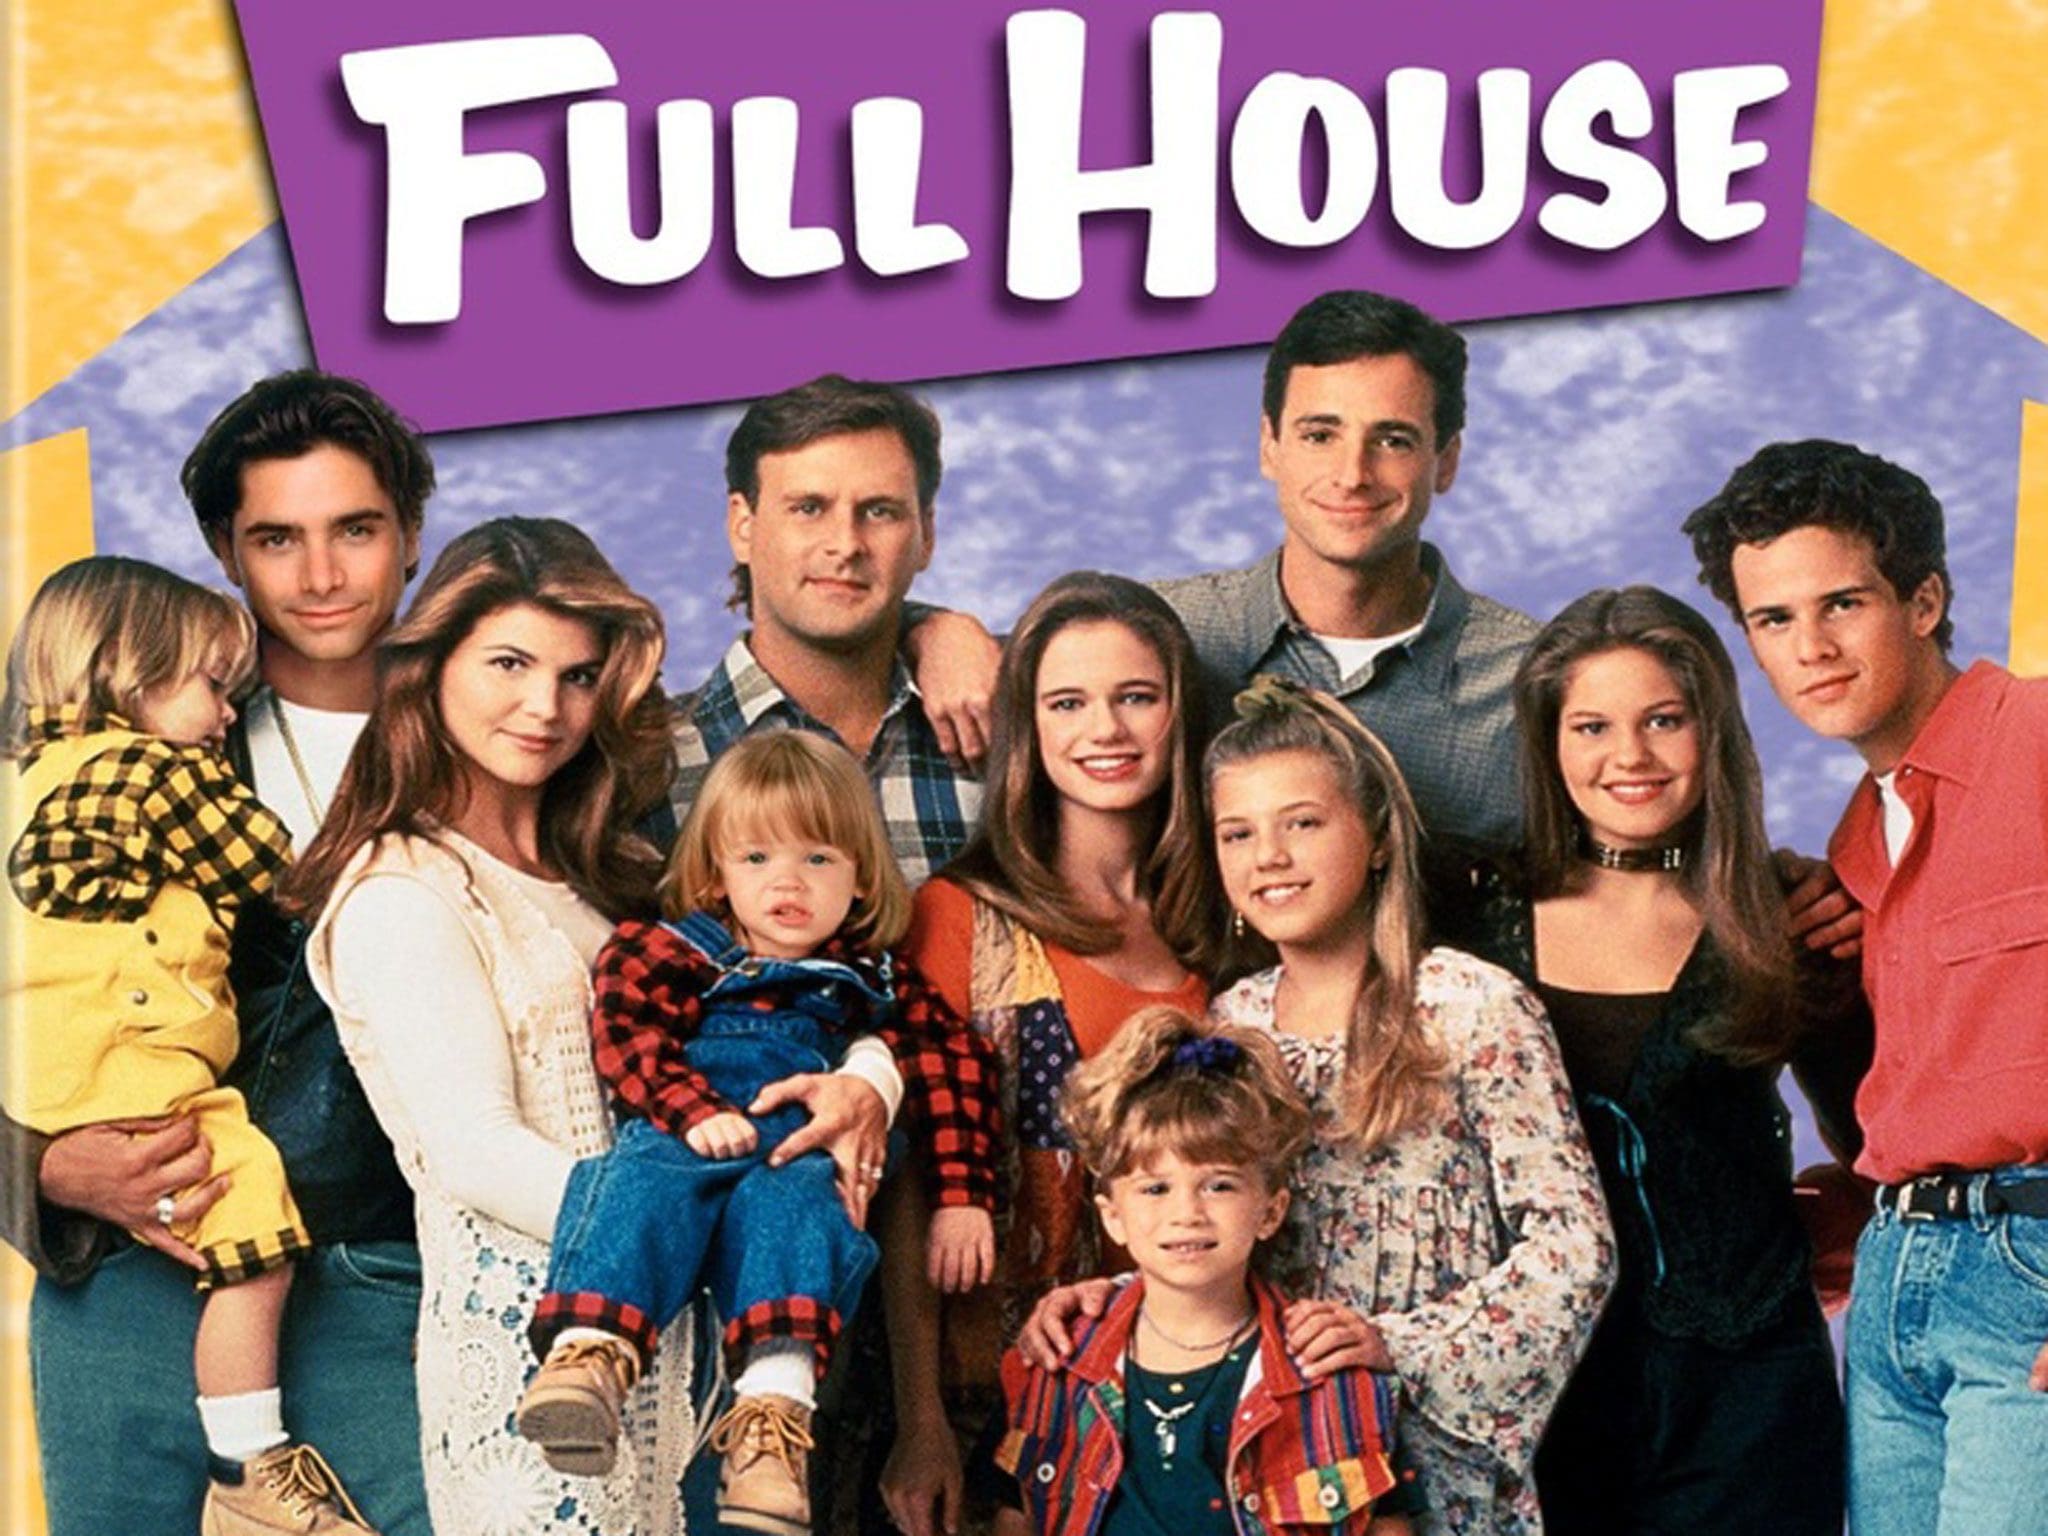 Las 20 mejores frases de «Full House» - Últimas noticias de la actualidad -  Noticias Virales MOTT